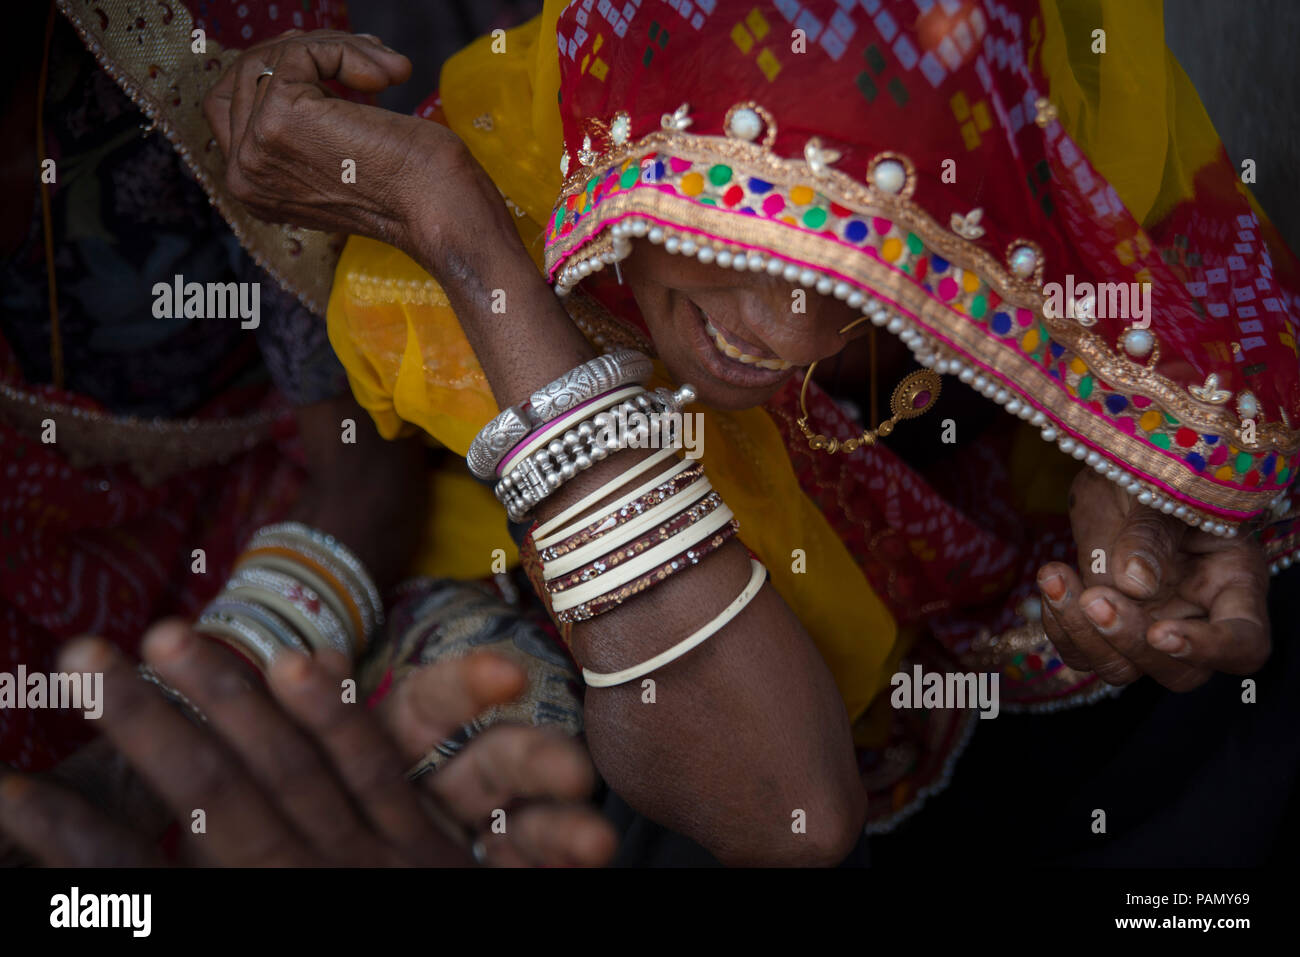 Indian woman smiling, portant un anneau dans le nez d'or, un foulard rouge et brodé de moutarde et de nombreux bracelets. 4 mains dans l'image. Banque D'Images